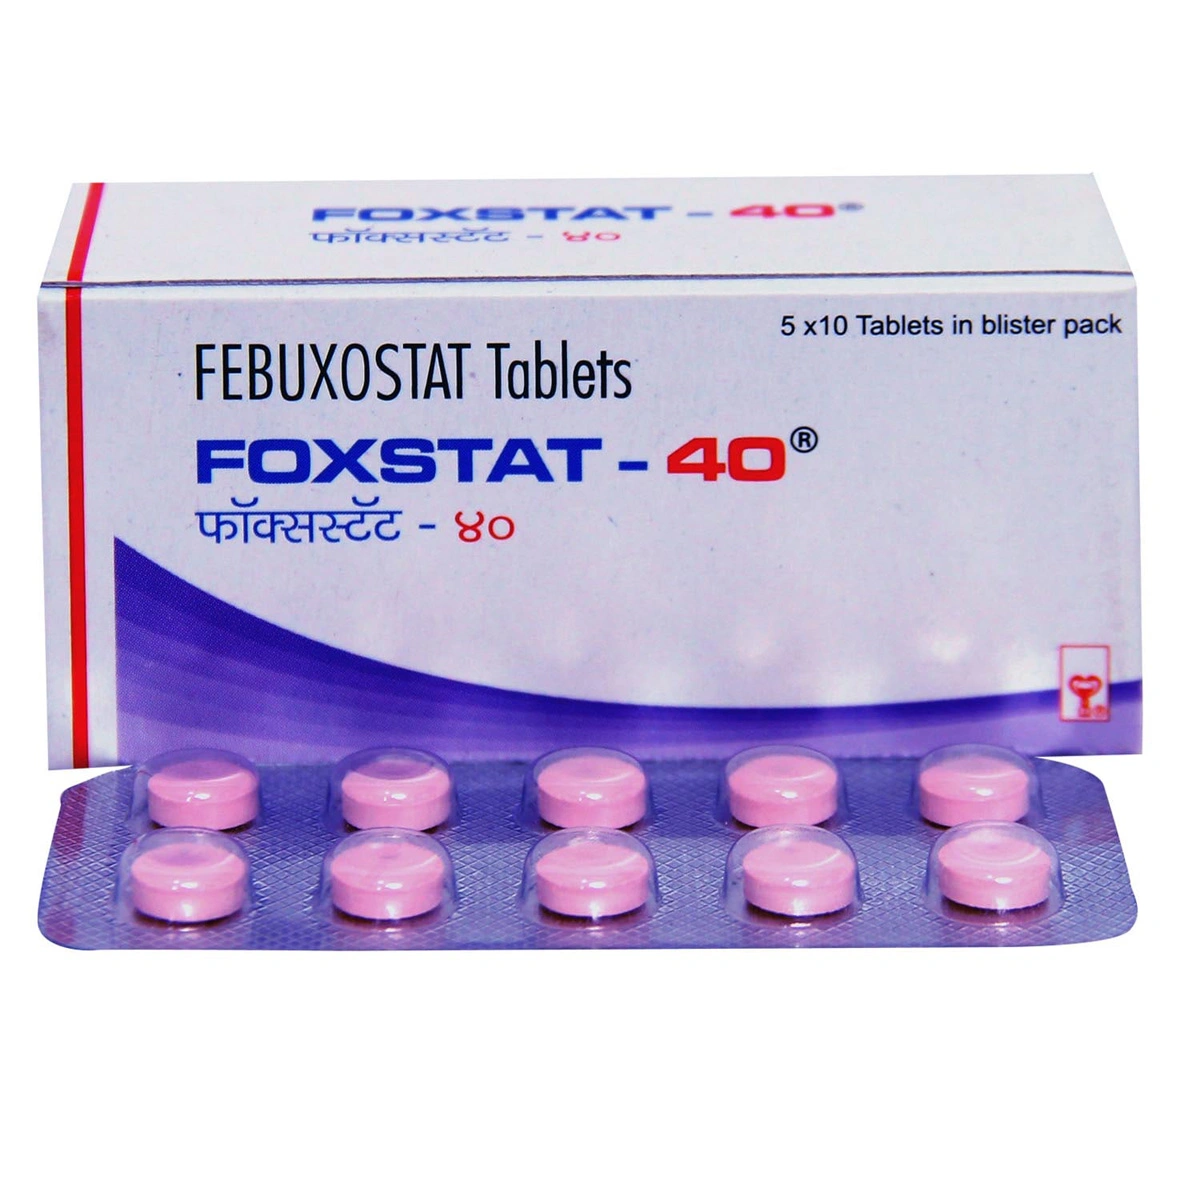 foxstat-40-tablet